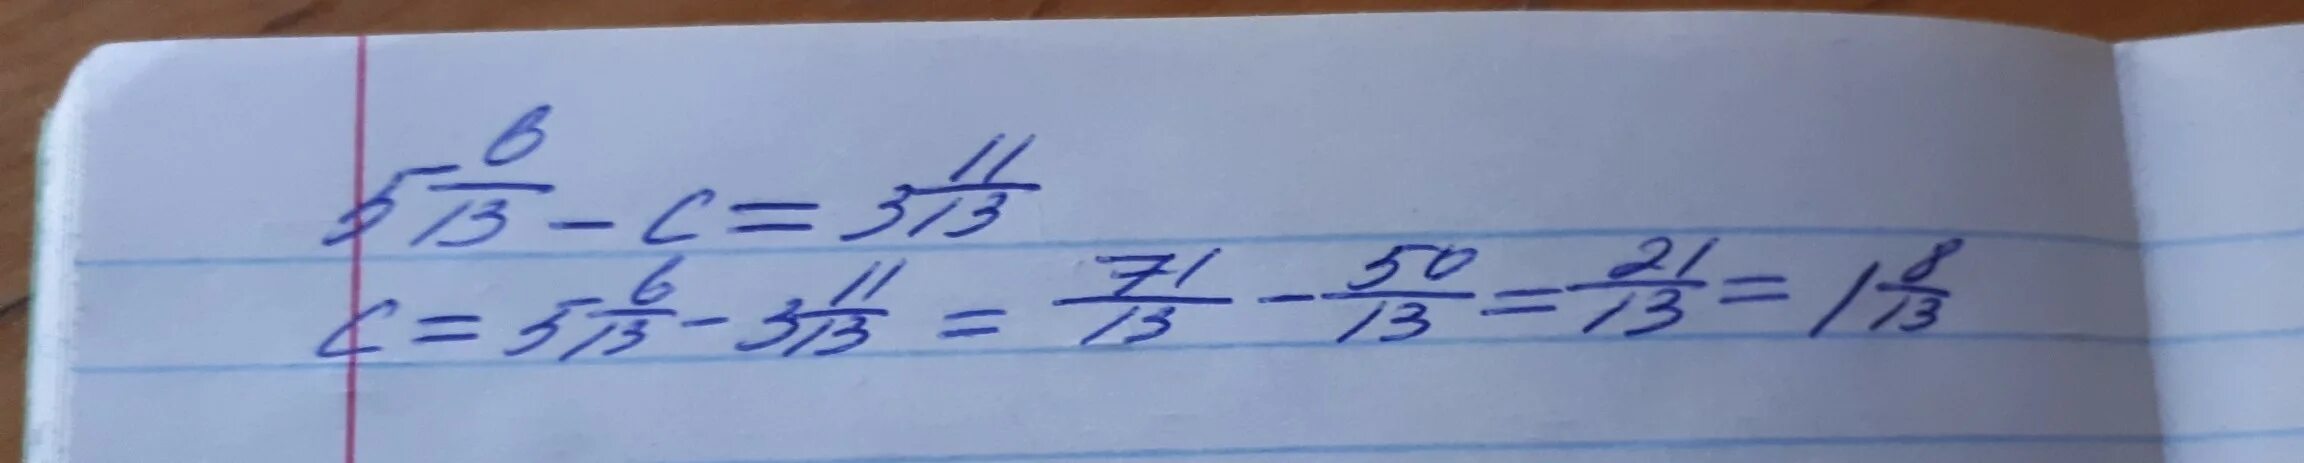 Решить пример 4 целых 5 девятых +(-3 целых 7 пятнадцатых)_(2 целых 3 пятых). Реши уравнение 6 целых минус 3 целых 4/9. 4 Целых 11/13 минус 3 целых равно. 28 / 2 Целые 6 7.